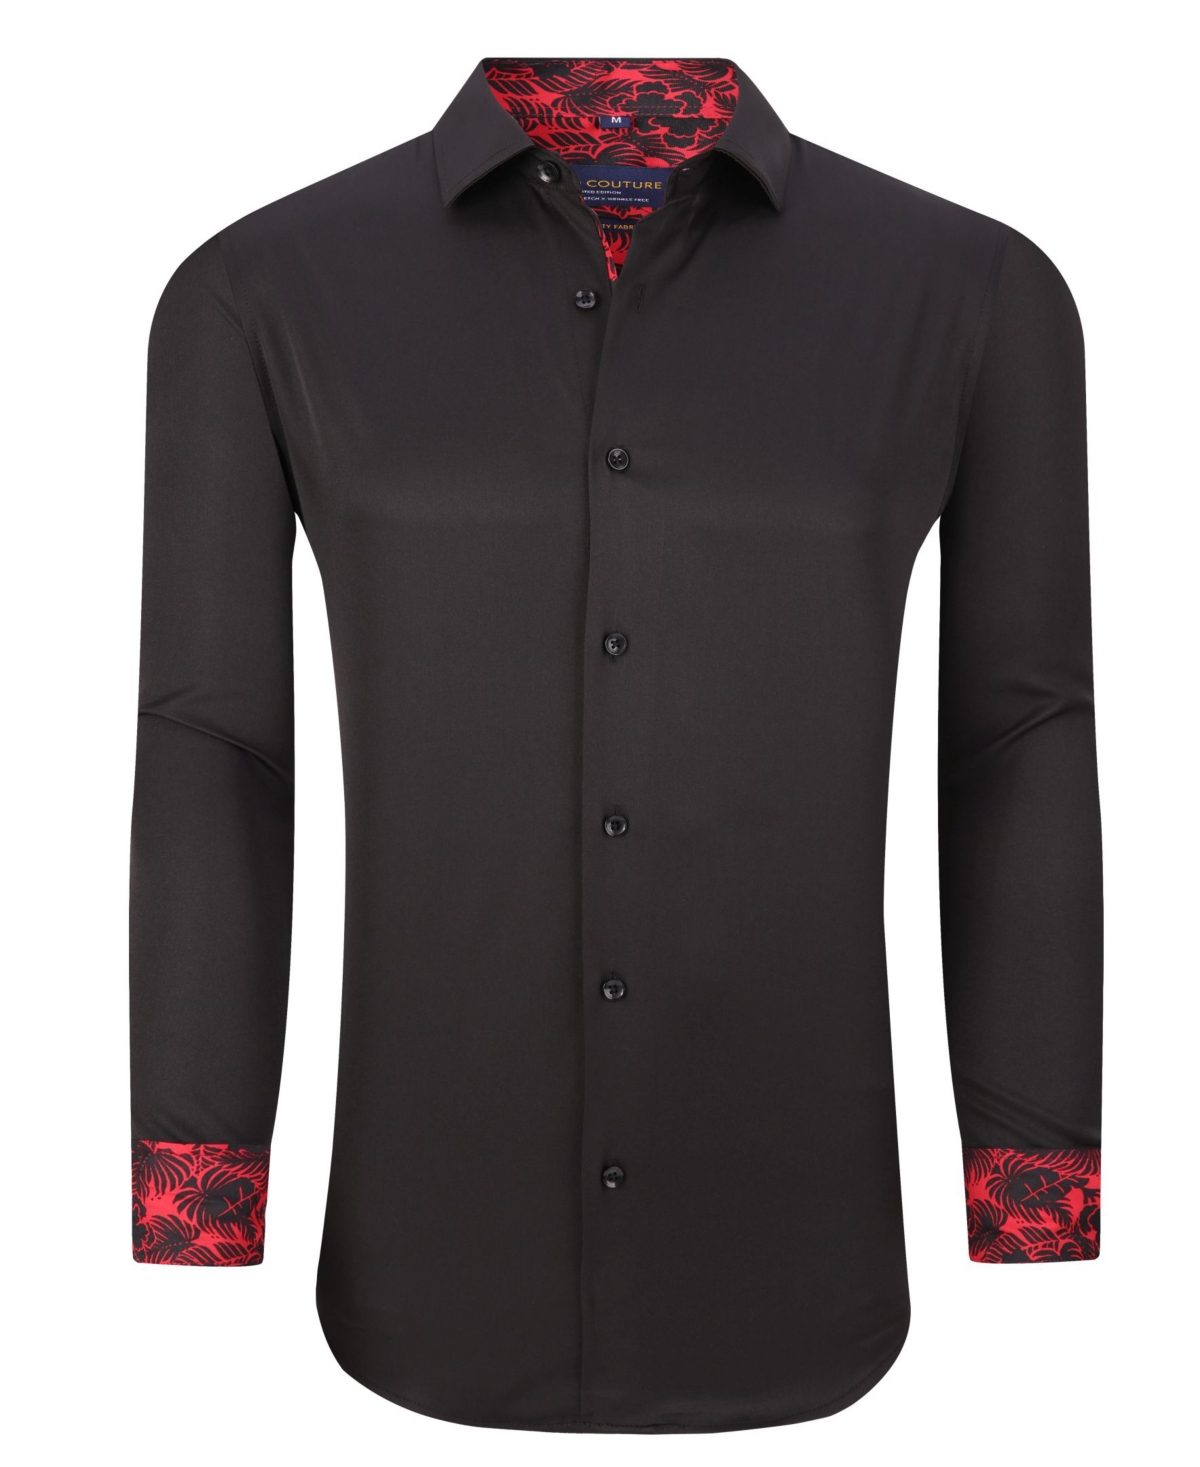 Men's Solid Slim Fit Wrinkle Free Stretch Dress Shirt - Black